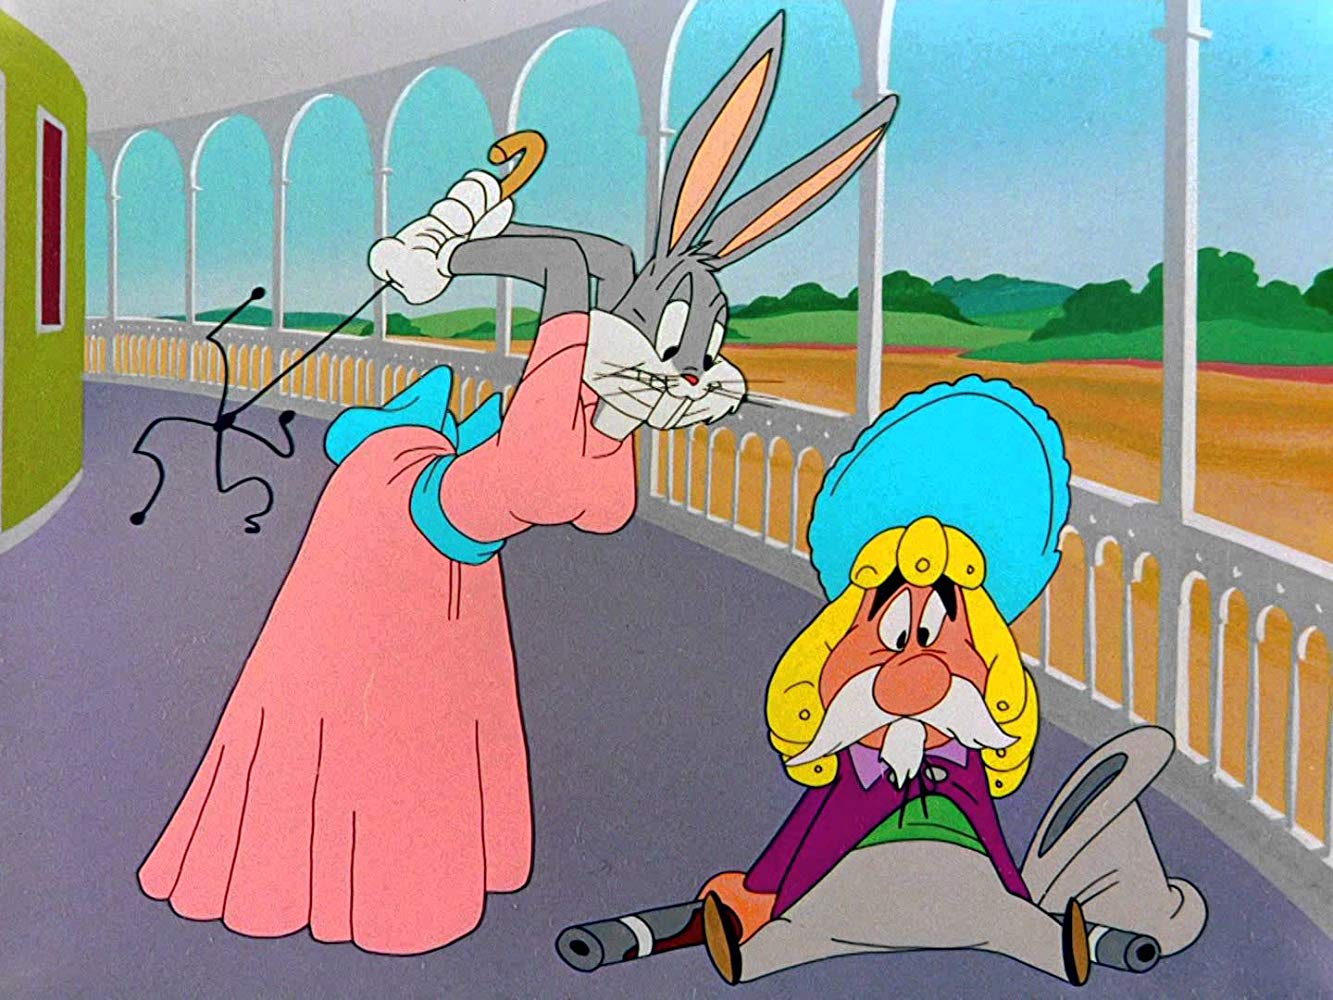 Mississippi Hare (1949)